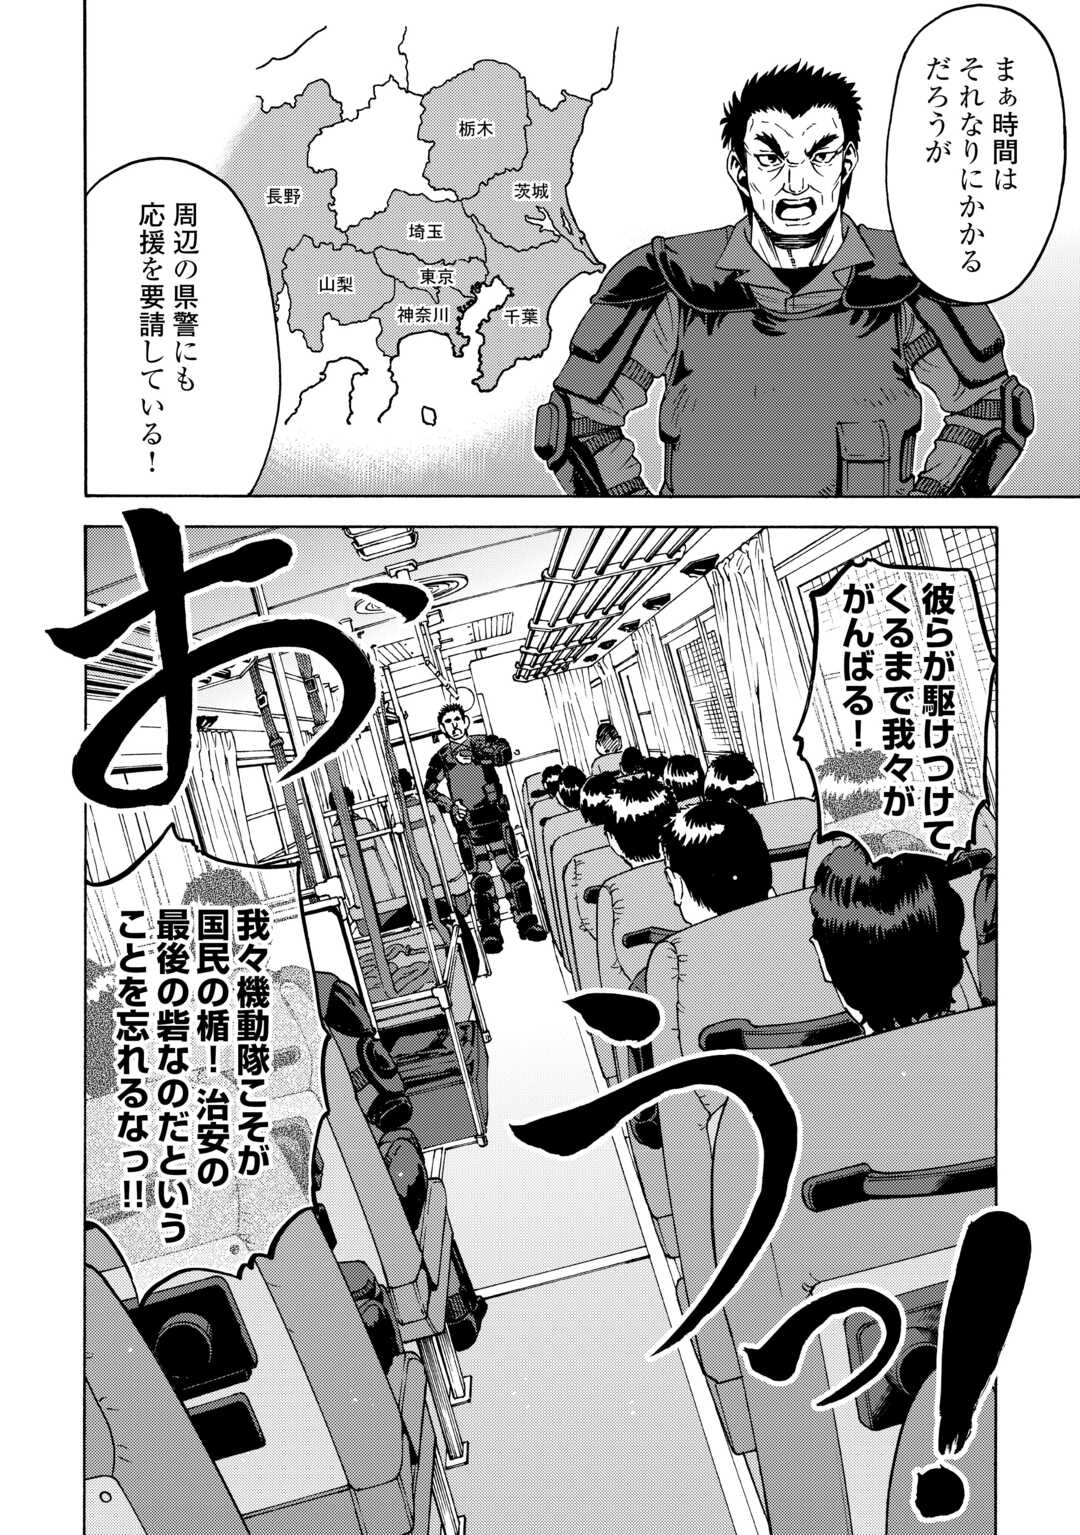 ゲート0 -zero- 自衛隊 銀座にて、斯く戦えり 第5話 - Page 5